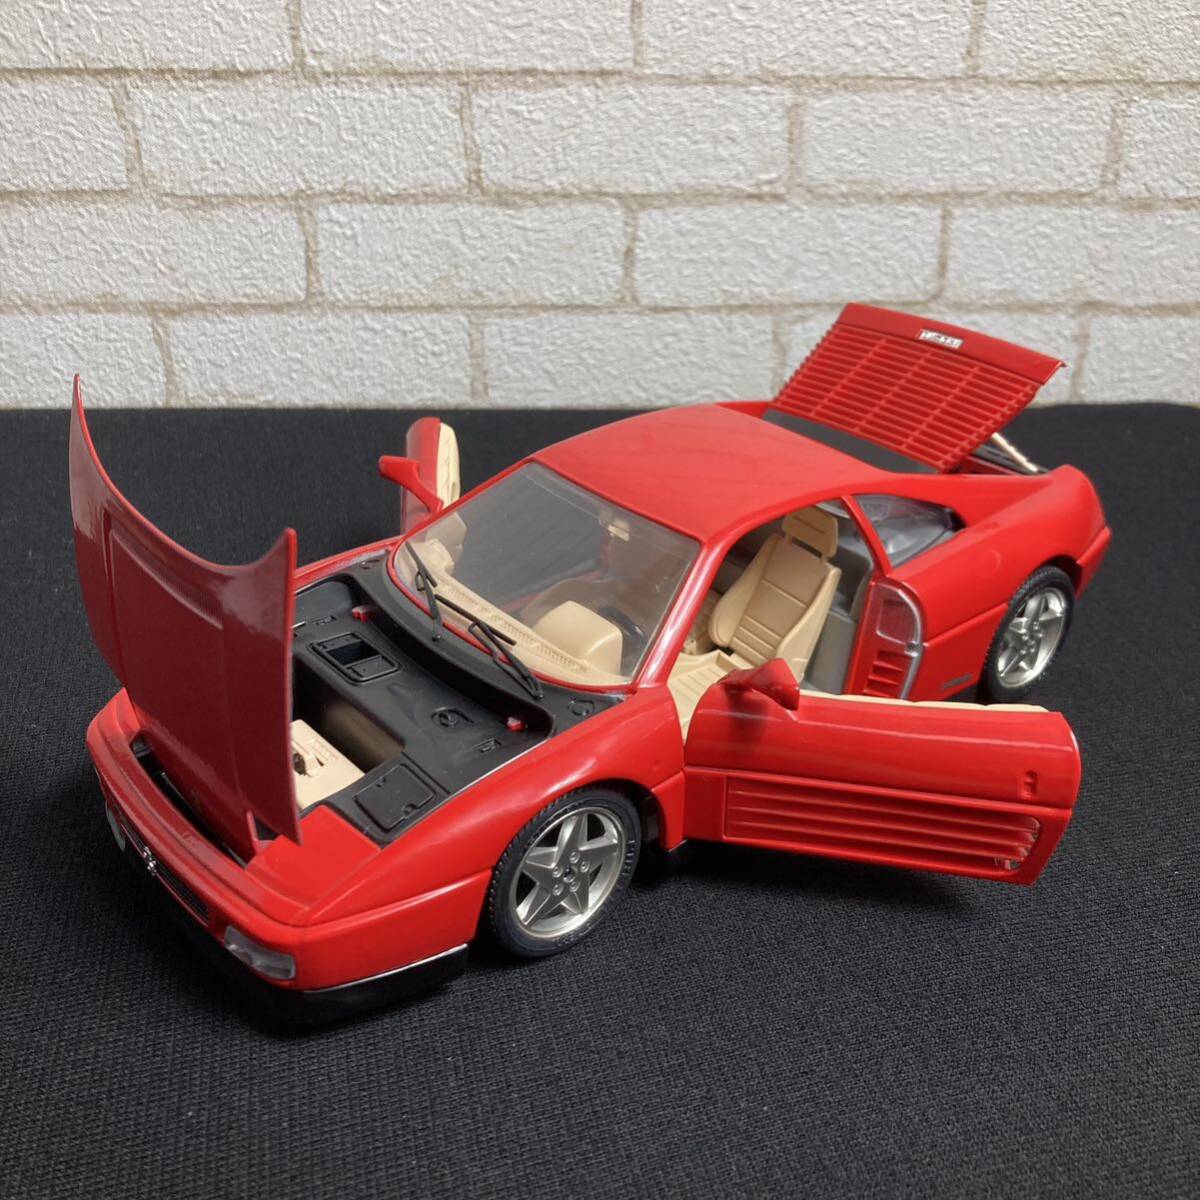 イタリア製 burago ブラーゴ 1/18 1989年型 フェラーリ 348tb レッド 赤 ミニカー おもちゃ 玩具 コレクター品 k51-322-23の画像2